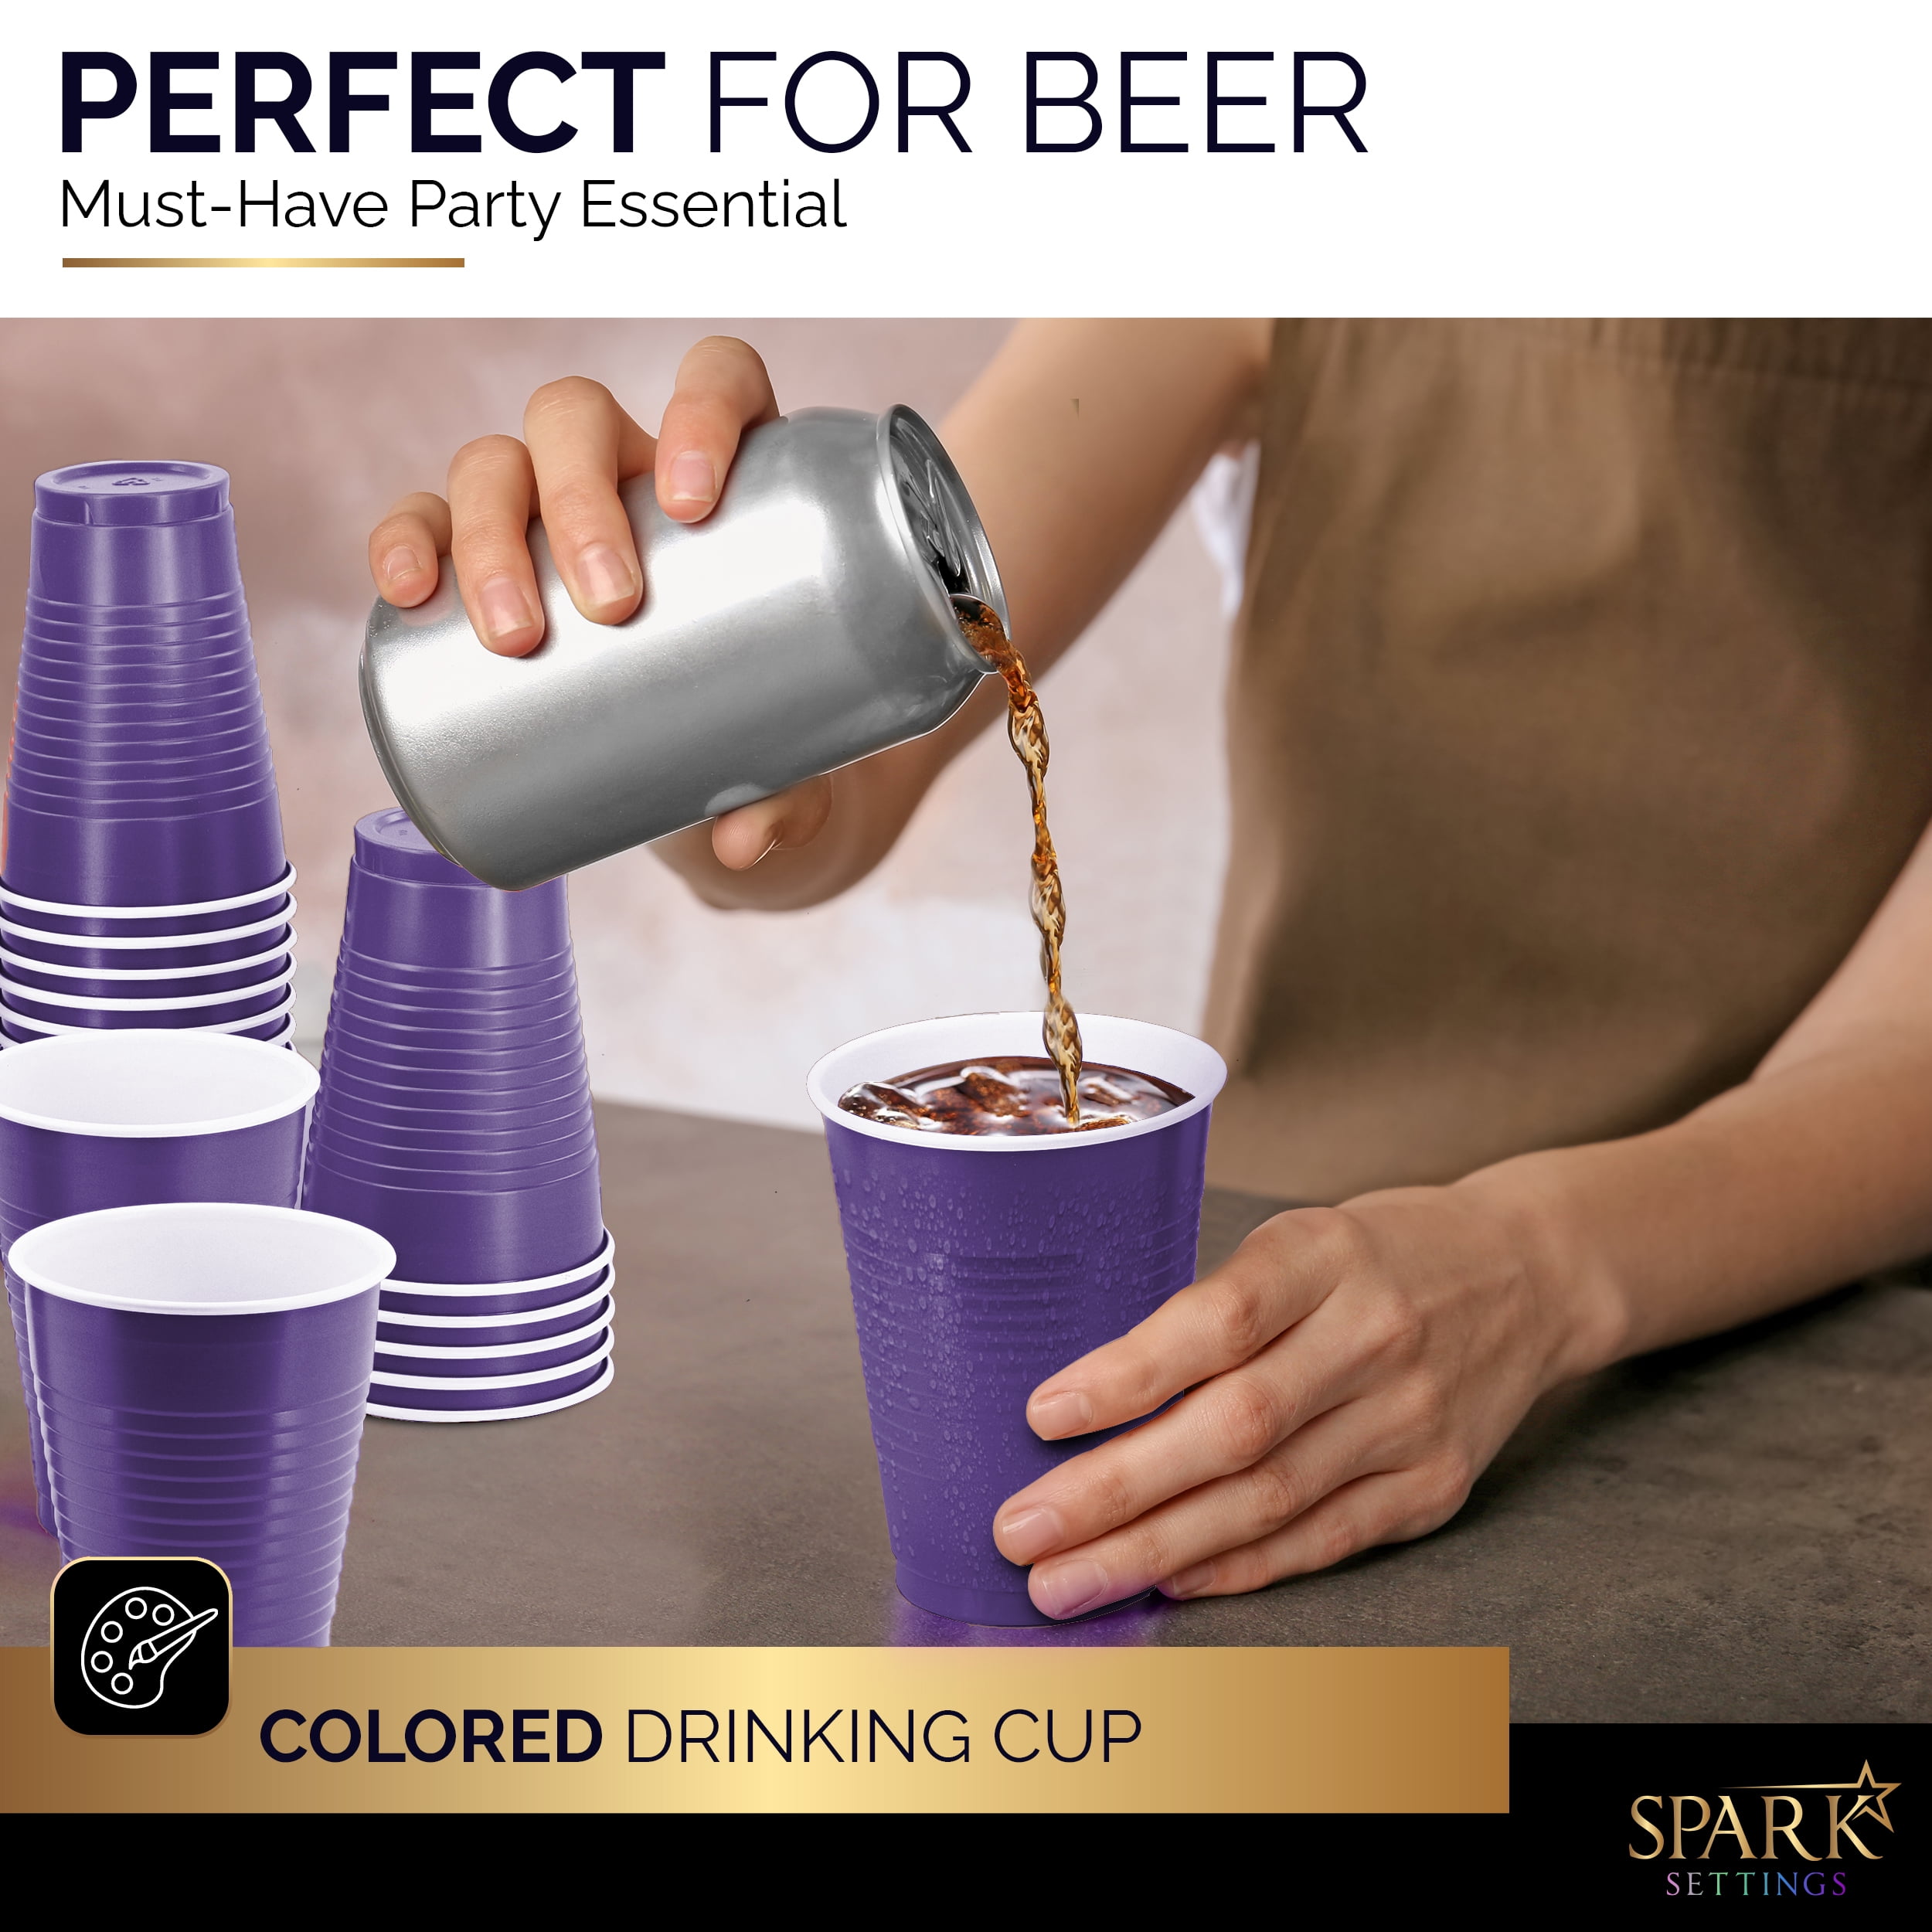 Exquisite Purple Heavy Duty Disposable Plastic Cups, Bulk Party